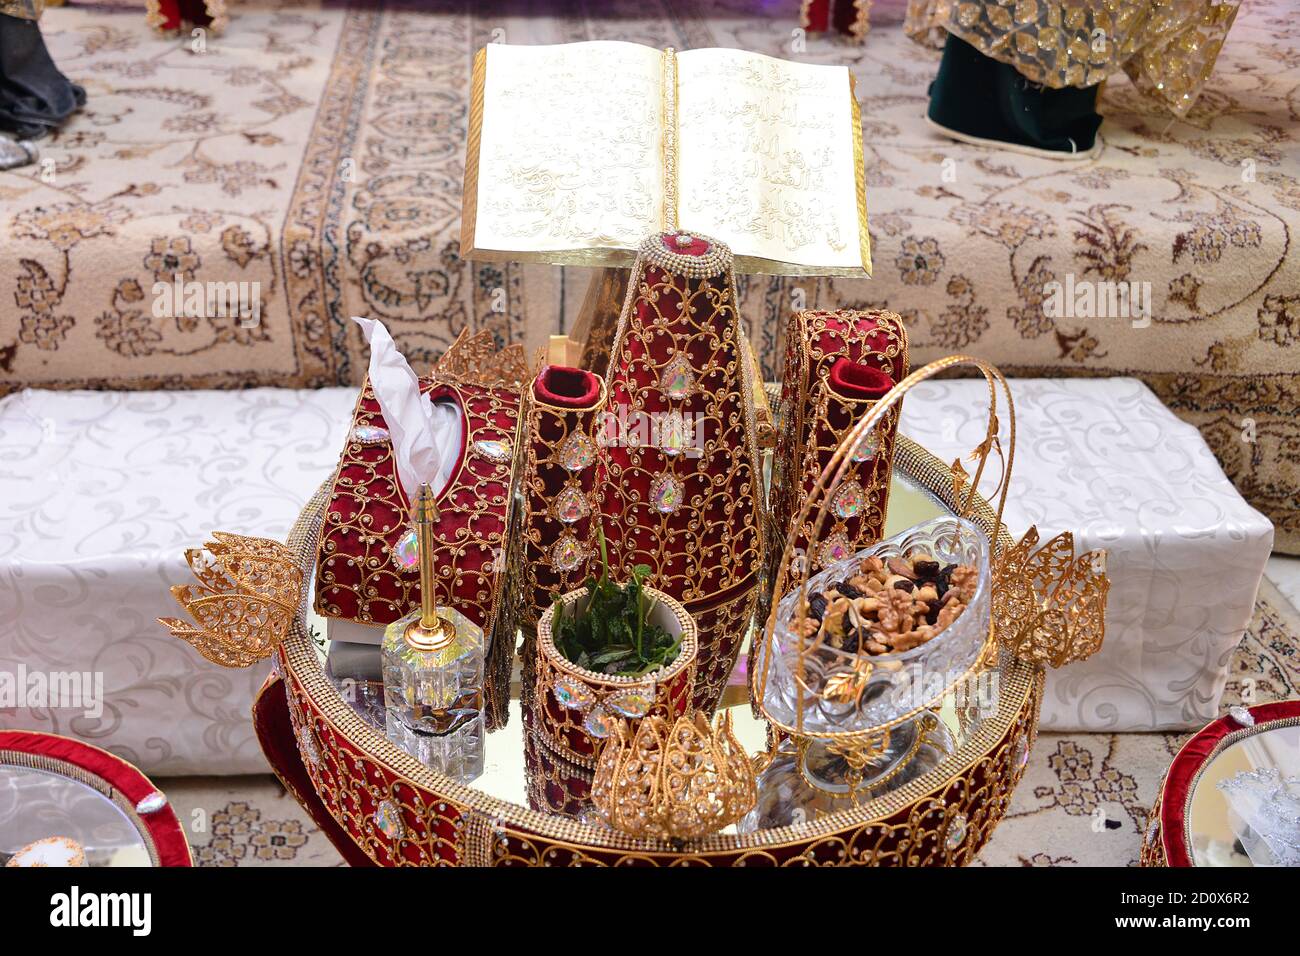 Tiffer marocchino, contenitori regalo tradizionali per la cerimonia nuziale, decorato con ricami dorati ornati.hennè marocchino. Regali di nozze per la b Foto Stock